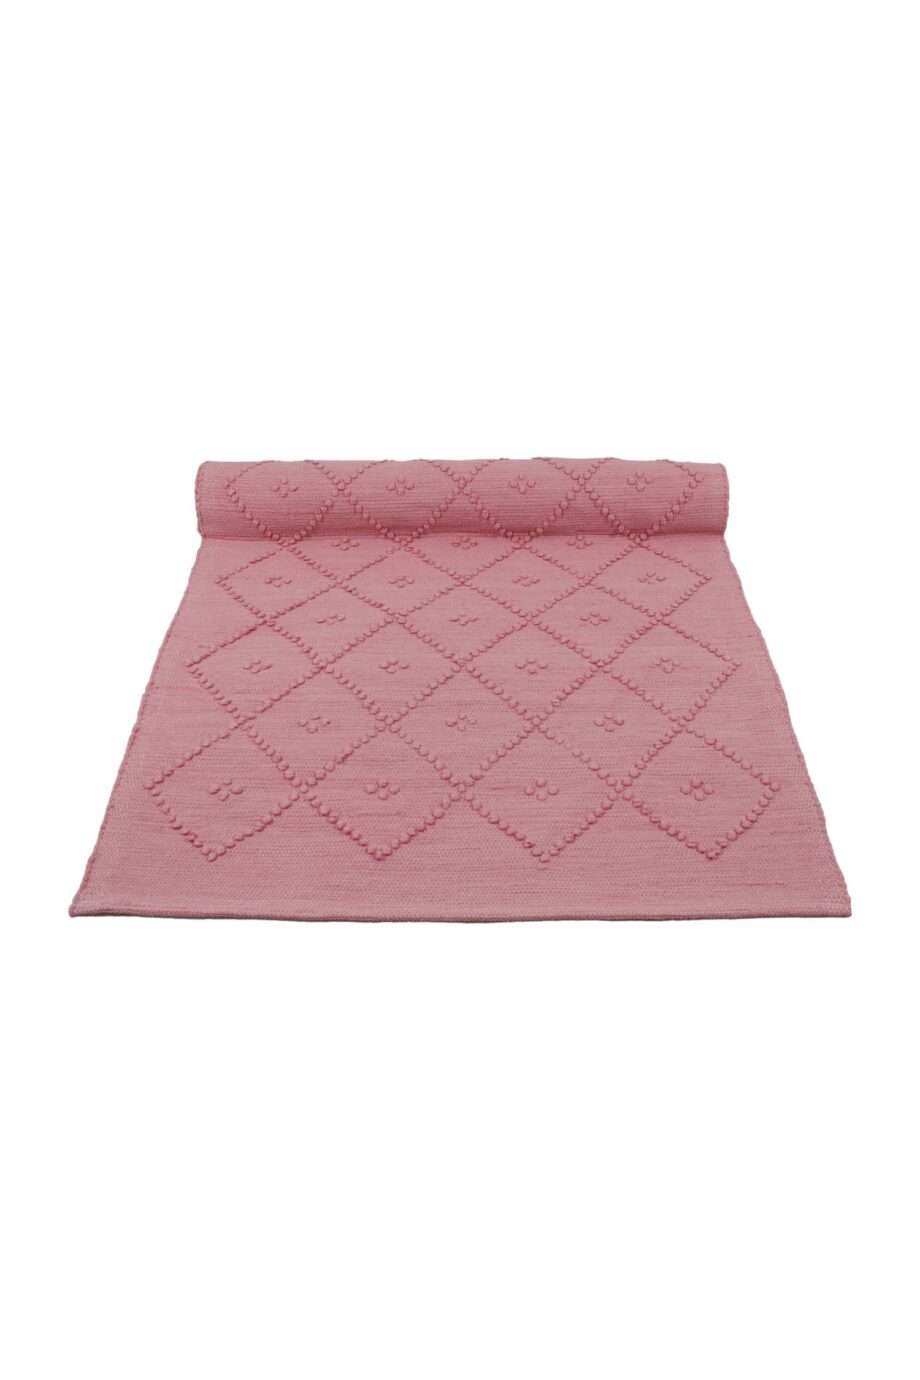 diamond pink woven cotton floor mat small